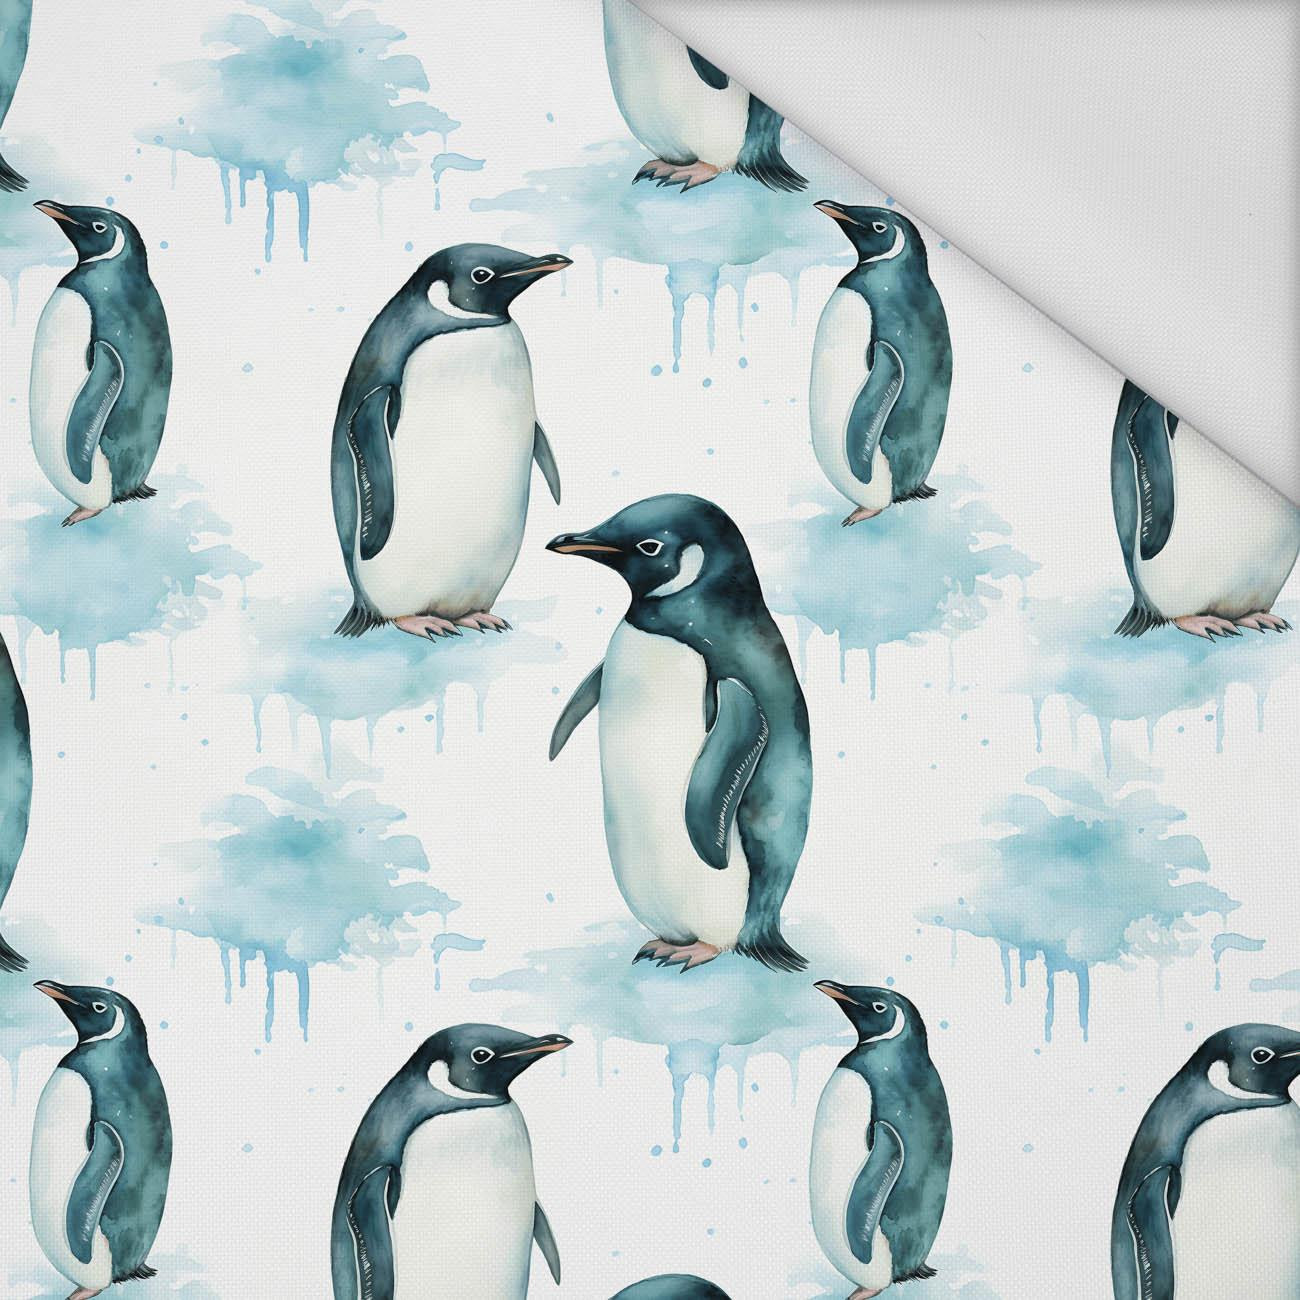 ARCTIC PENGUIN - Waterproof woven fabric